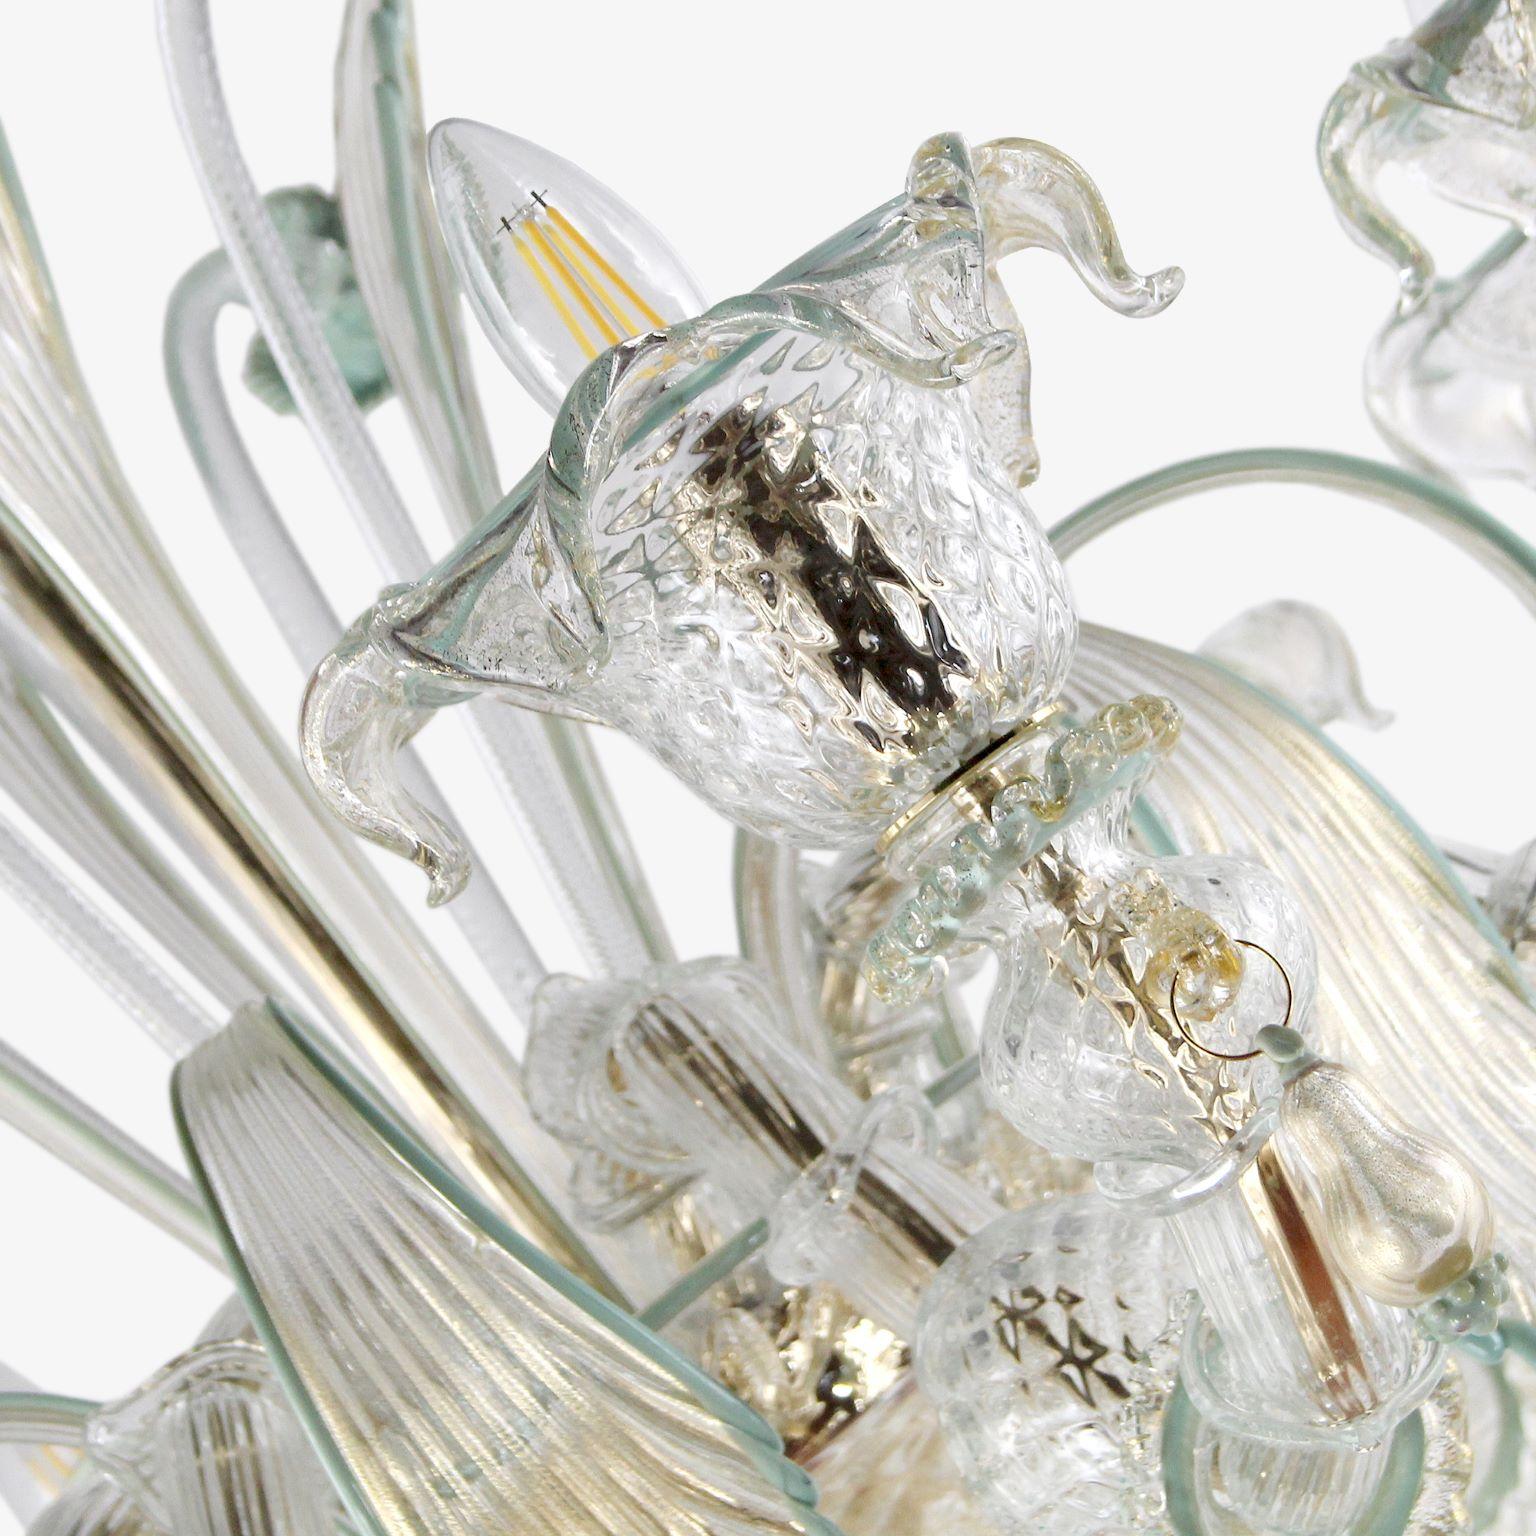 8-armiger Rezzonico-Kronleuchter aus Murano-Kristallglas mit goldenen, grünen und grauen Farbakzenten von Multiforme.
Dieser künstlerische Kronleuchter aus Glas ist ein elegantes und zartes Beleuchtungsobjekt, das in Pastelltönen gehalten ist. Die